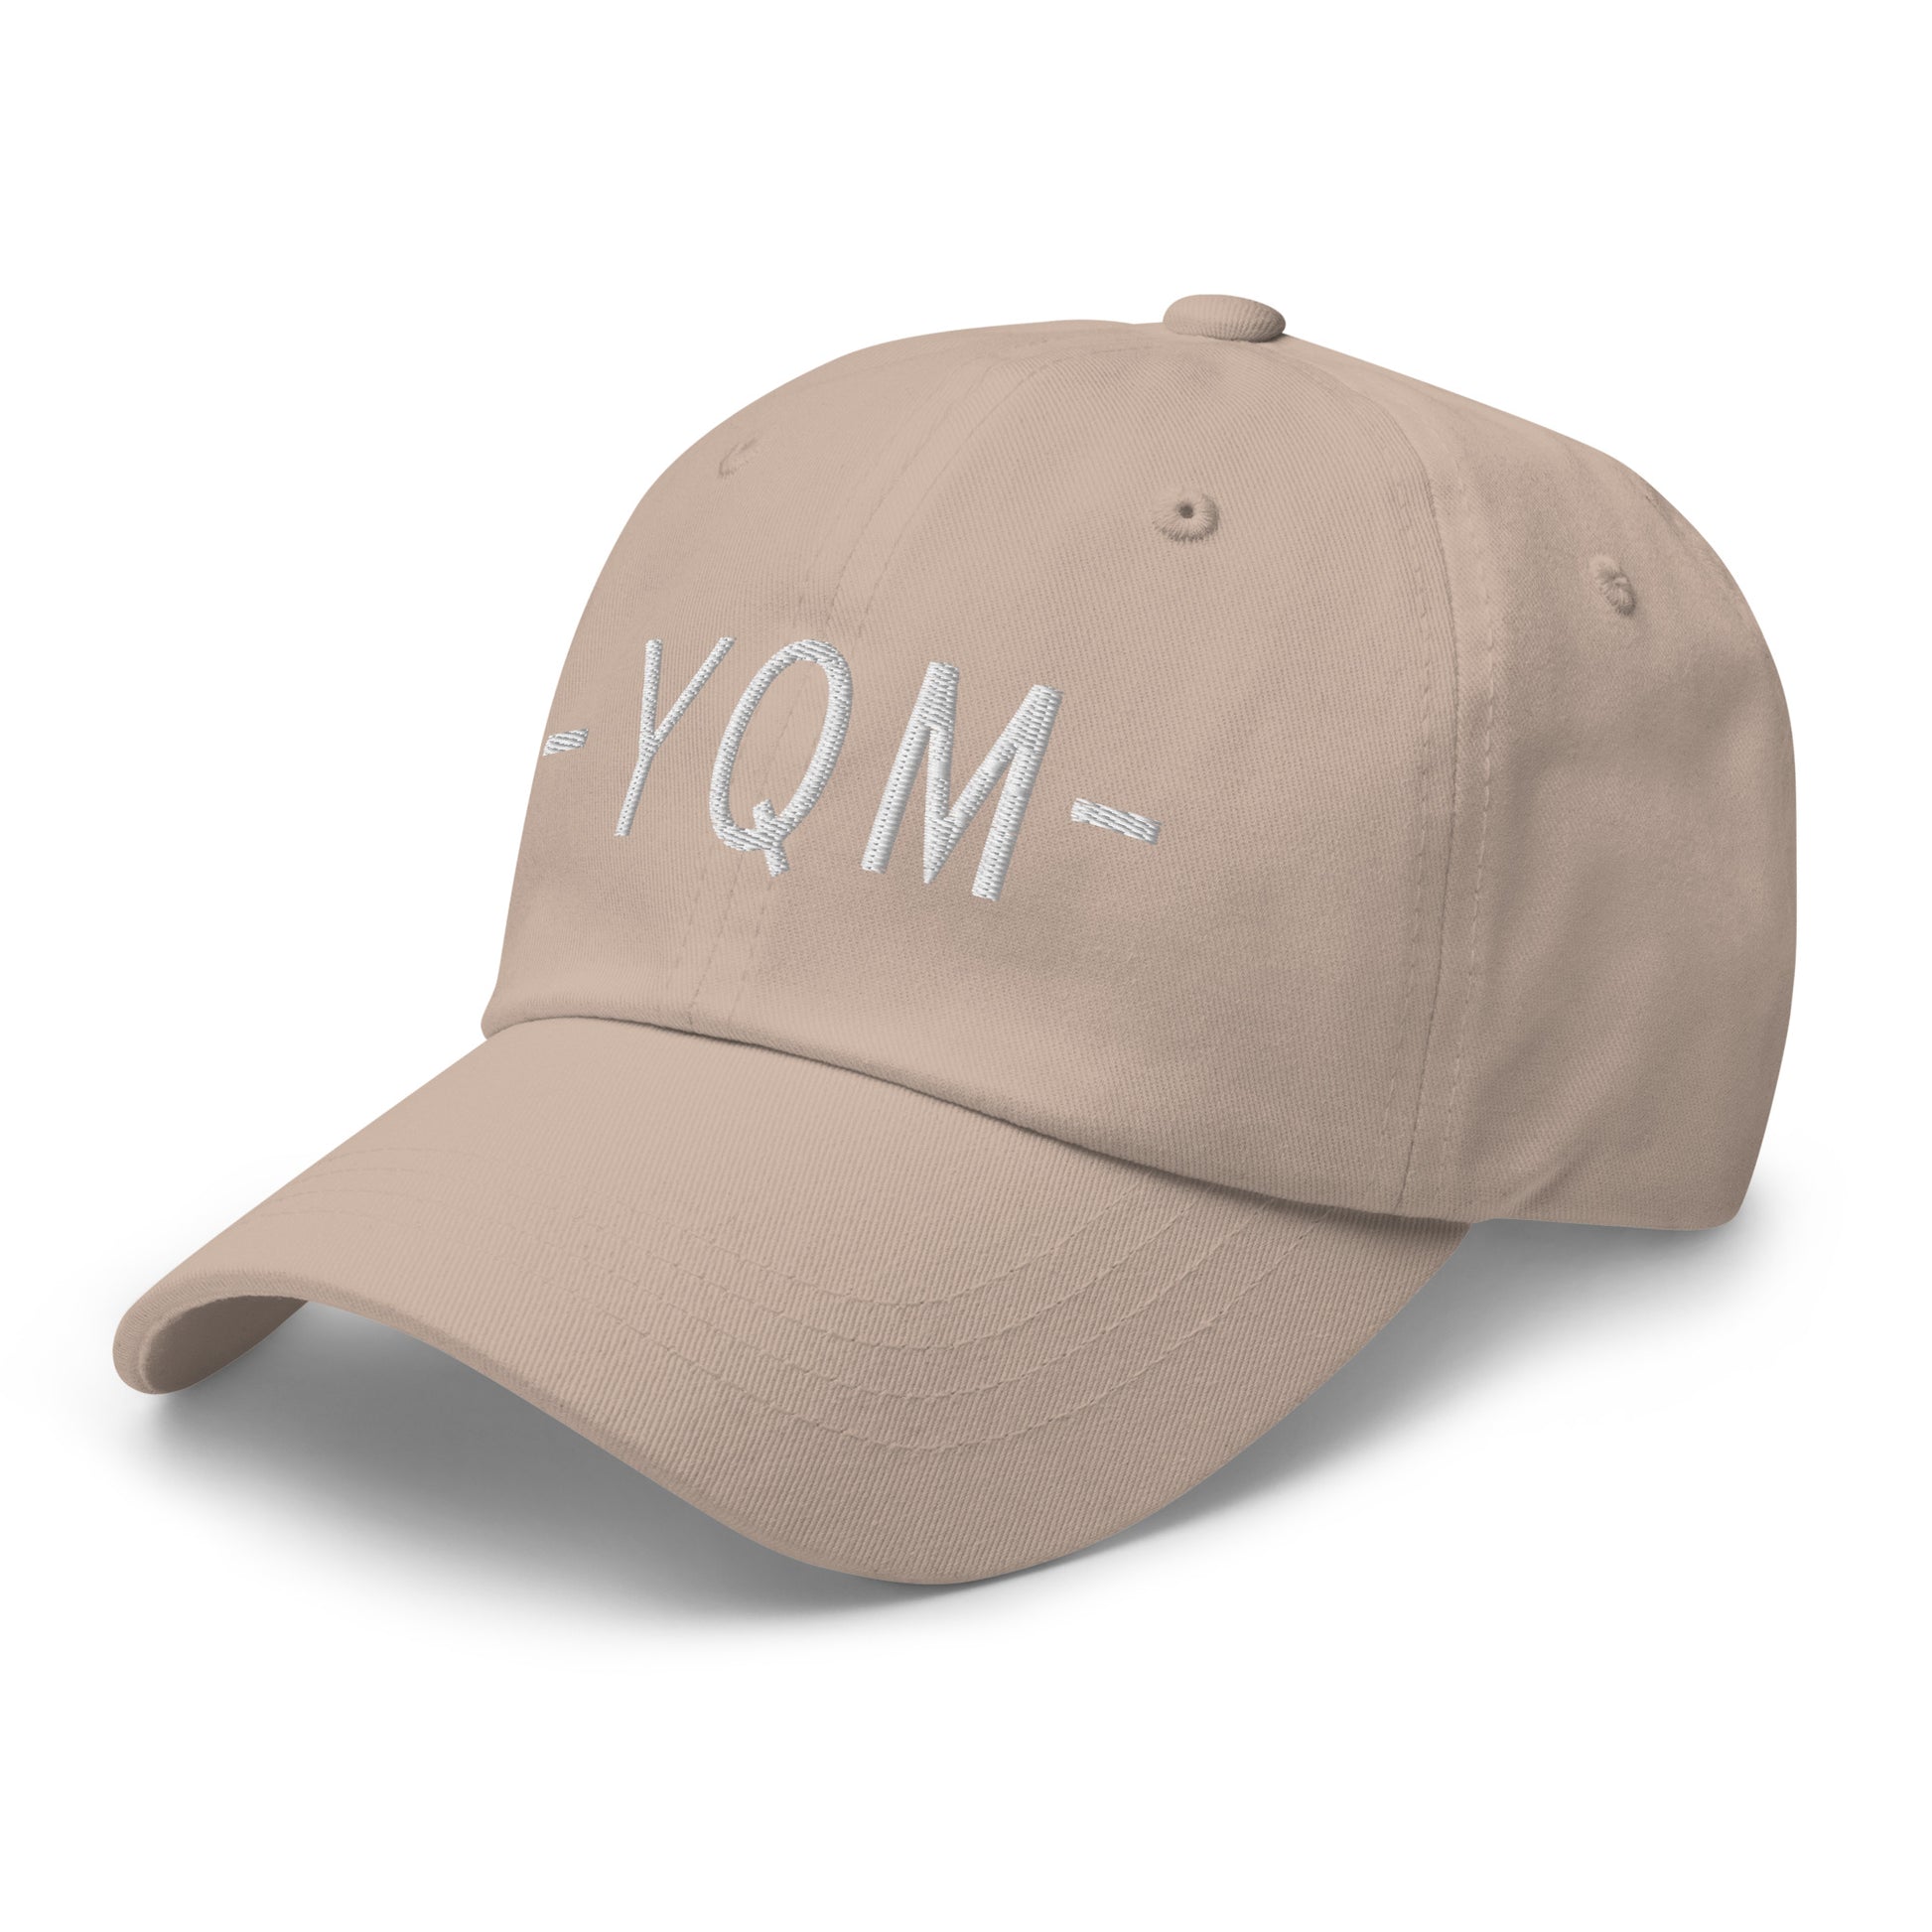 Souvenir Baseball Cap - White • YQM Moncton • YHM Designs - Image 24